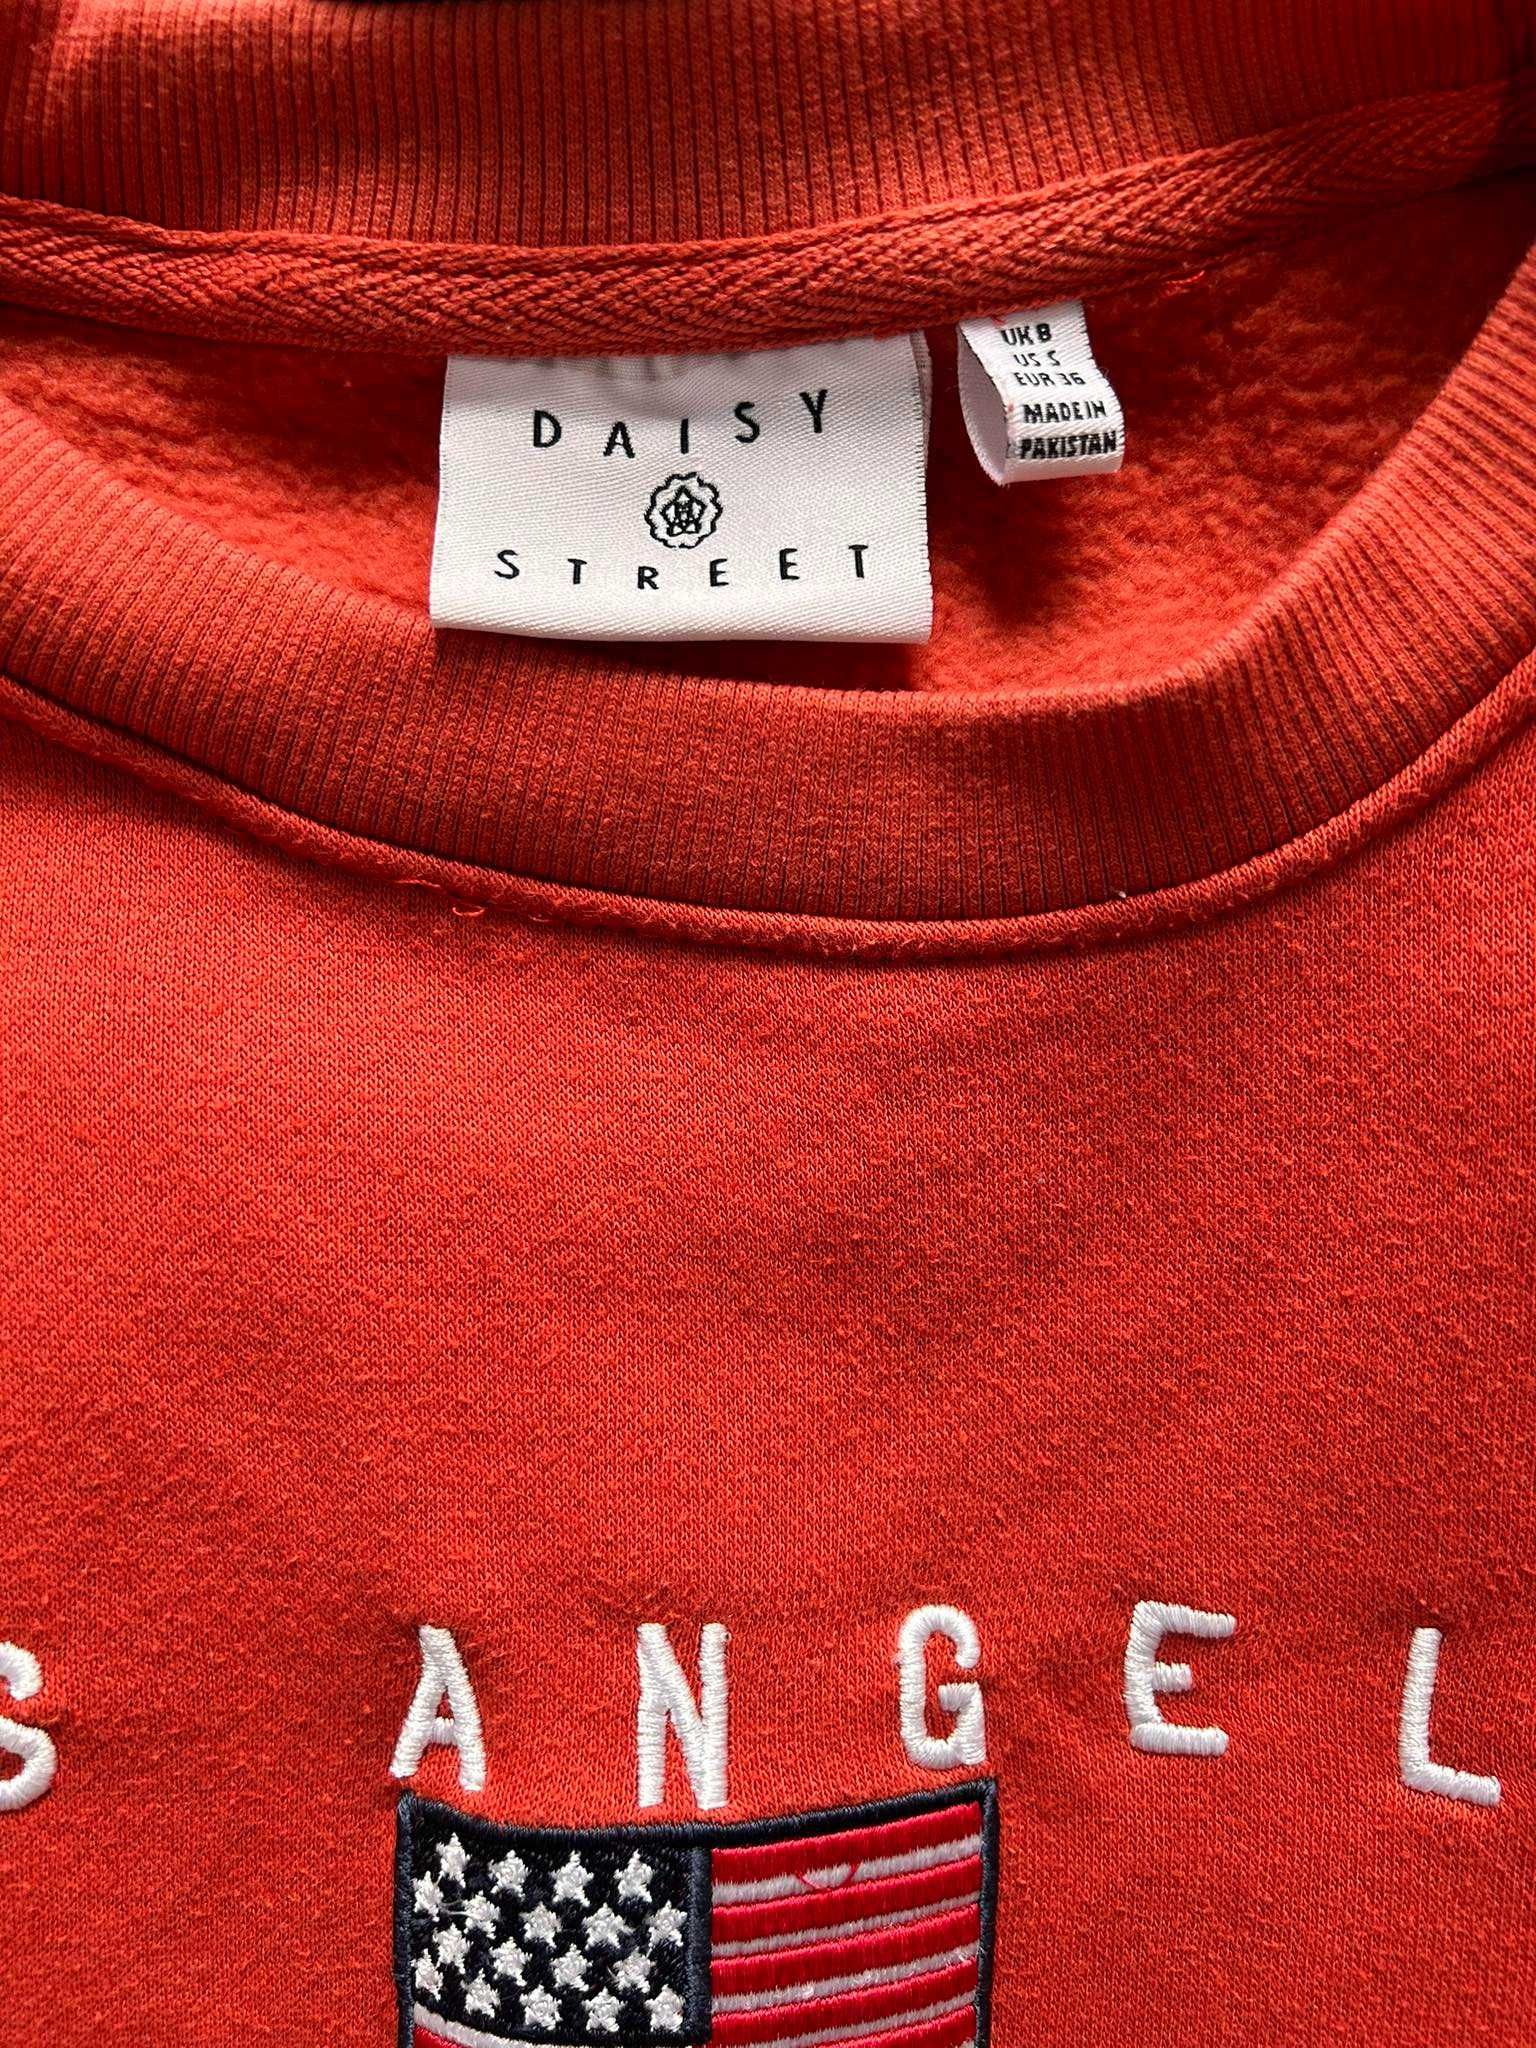 Bluza pomarańczowo, czerwona Daisy Street, Los Angeles, rozmiar S